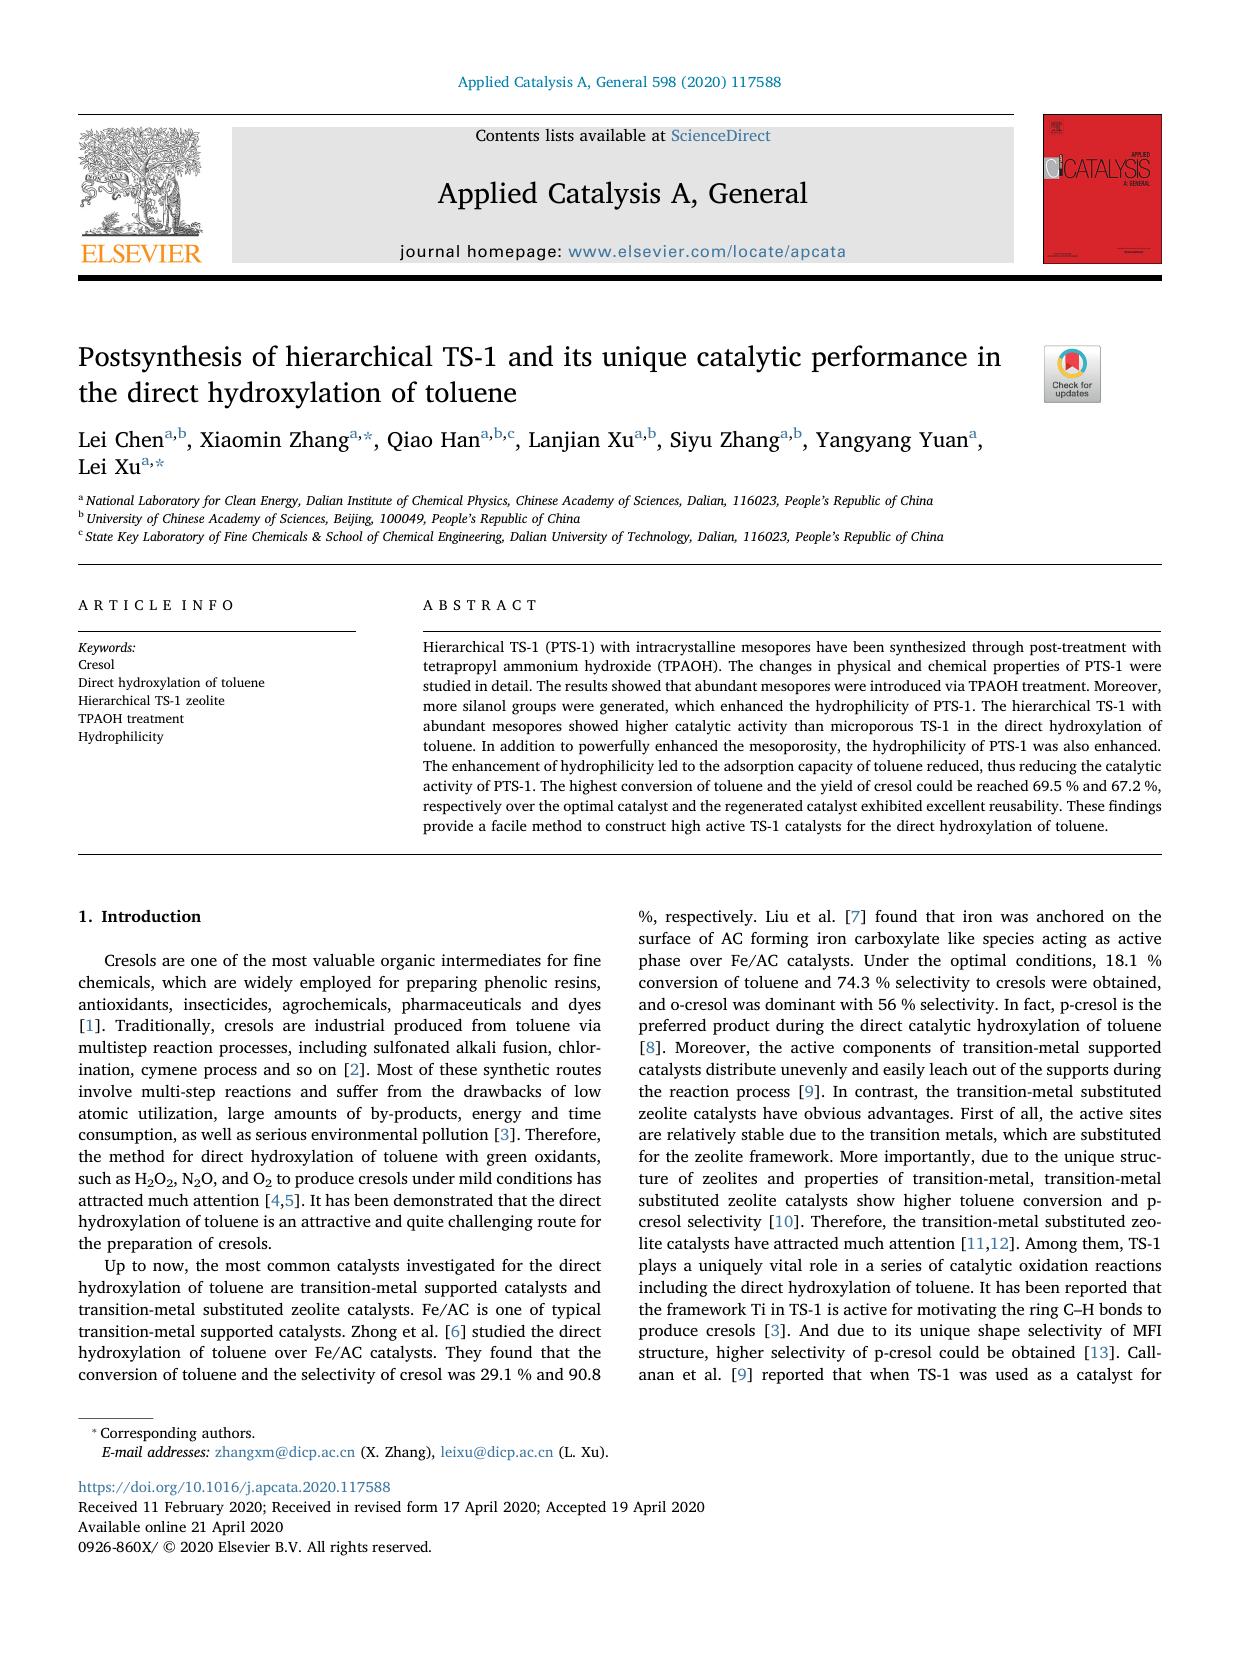 Postsynthesis of hierarchical TS-1 and its unique catalytic performance in the direct hydroxylation of toluene by Lei Chen & Xiaomin Zhang & Qiao Han & Lanjian Xu & Siyu Zhang & Yangyang Yuan & Lei Xu